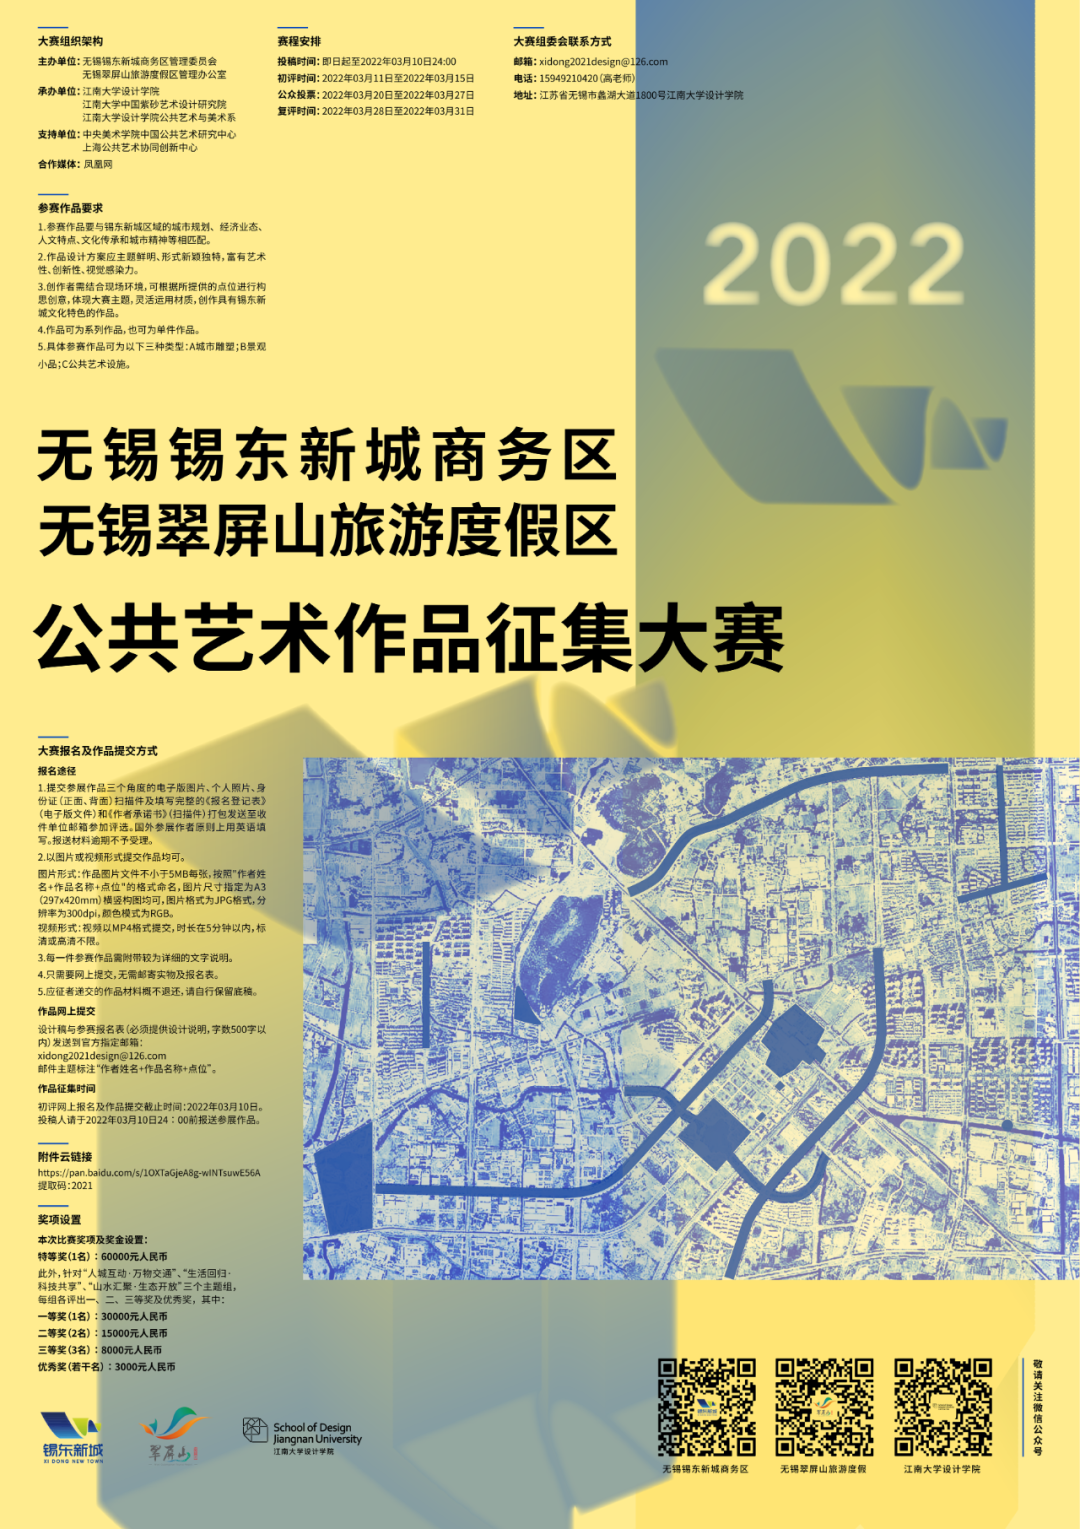 2022无锡锡东新城商务区、无锡翠屏山旅游度假区公共艺术作品征集大赛